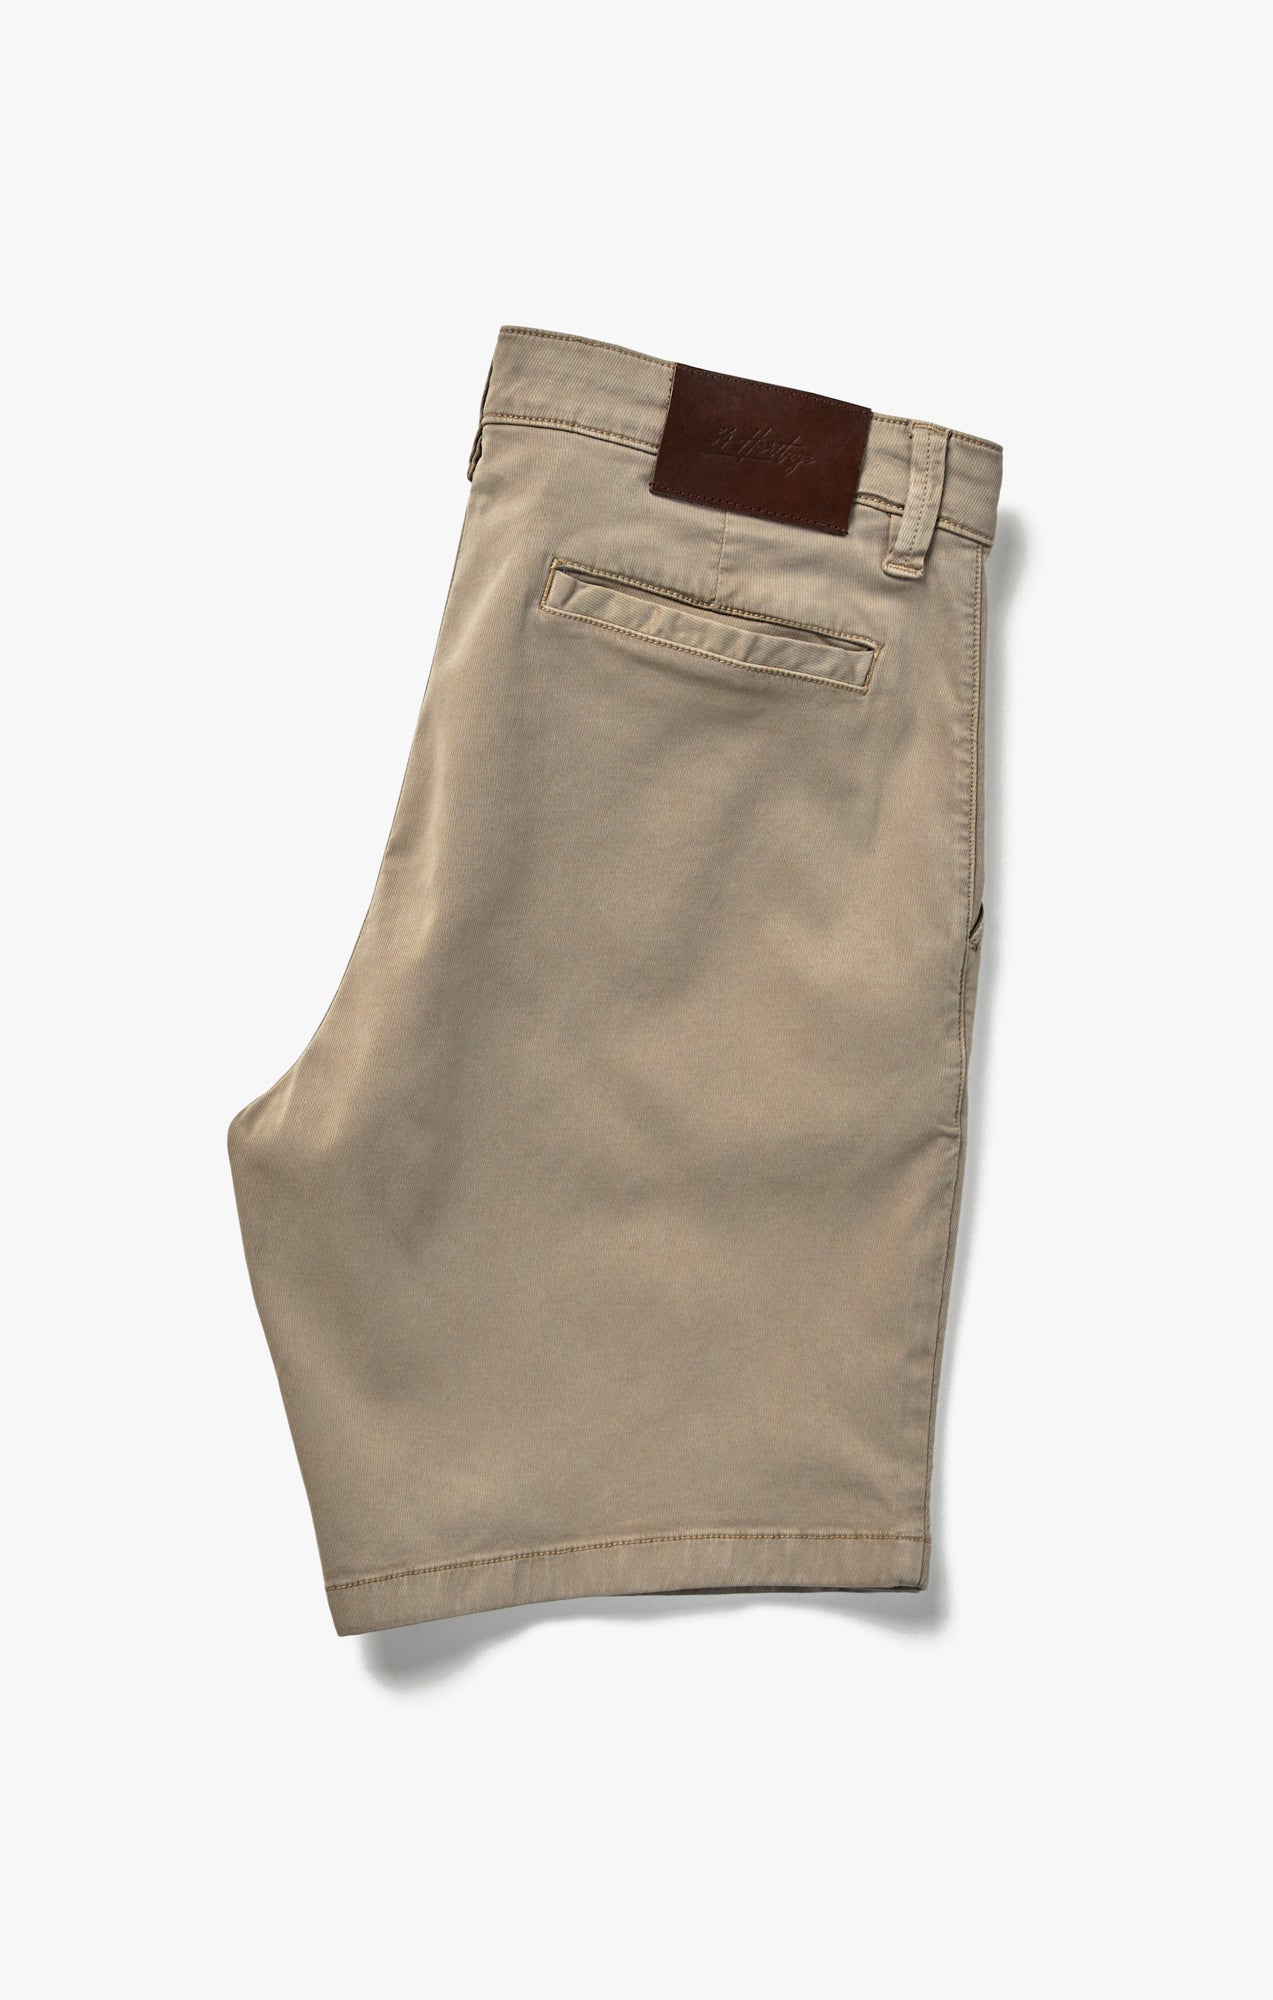 Arizona Shorts In Aluminum Soft Touch Image 7